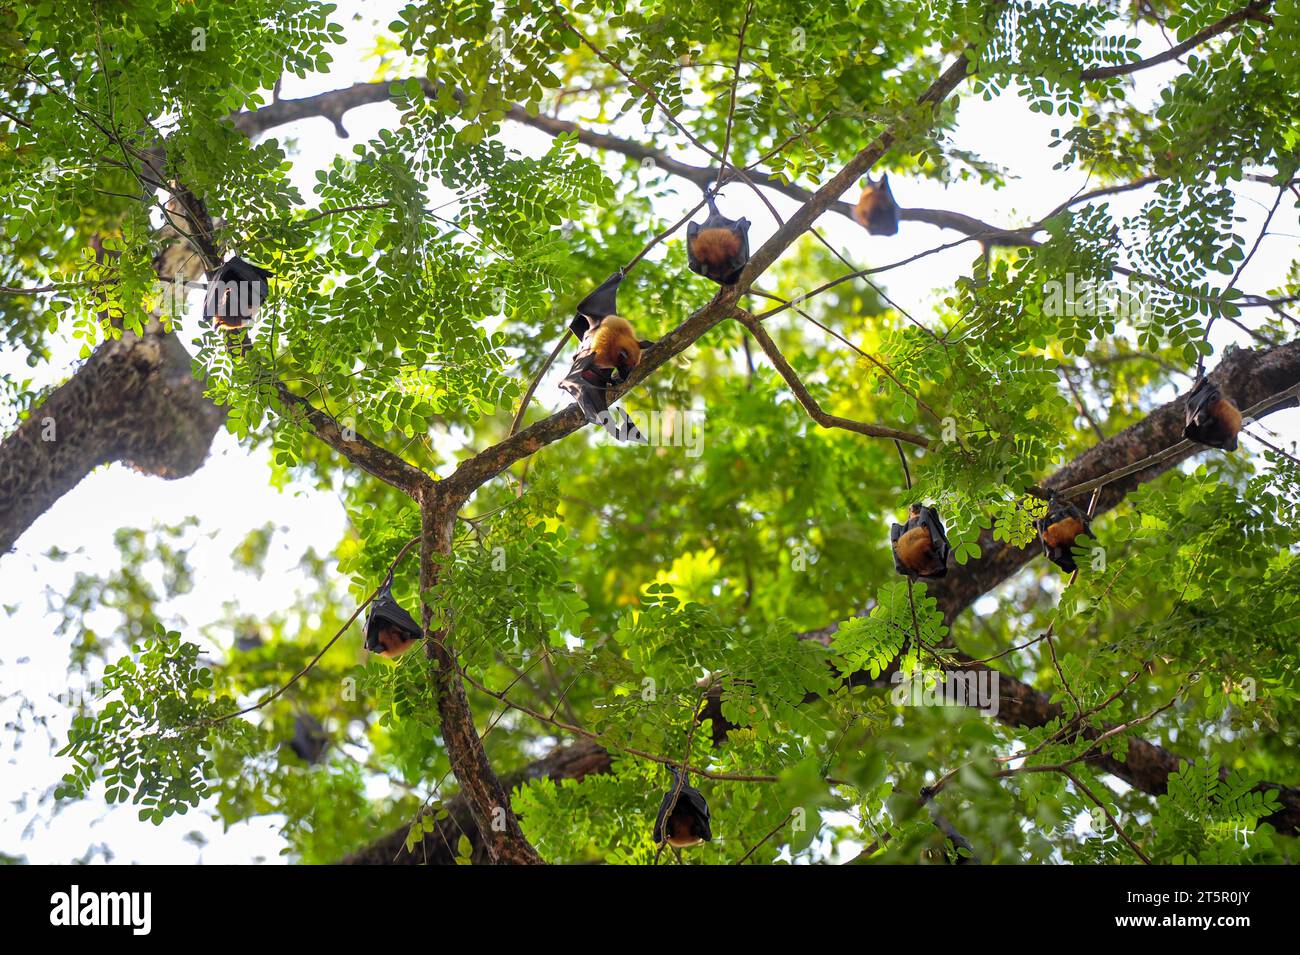 6 novembre 2023 Sylhet-Bangladesh: Pipistrelli appesi al ramo d'albero alla luce del giorno a Sylhet, in Bangladesh. I pipistrelli sono accusati di infezione da virus Nipah è una nuova malattia zoonotica emergente che si diffonde da animale a umano. I pipistrelli della frutta sono uno dei portatori del virus Nipah che viene trasmesso dai pipistrelli ad altri animali principalmente attraverso i fluidi corporei. Nel 2018 l'epidemia di Nipah nello stato indiano del Kerala ha causato 17 vittime. Ha infatti aperto il vaso di Pandora esponendo il ruolo del pubblico in generale, del dipartimento della sanità, dei social media e così via. Il rilevamento precoce e i m ben oliati Foto Stock